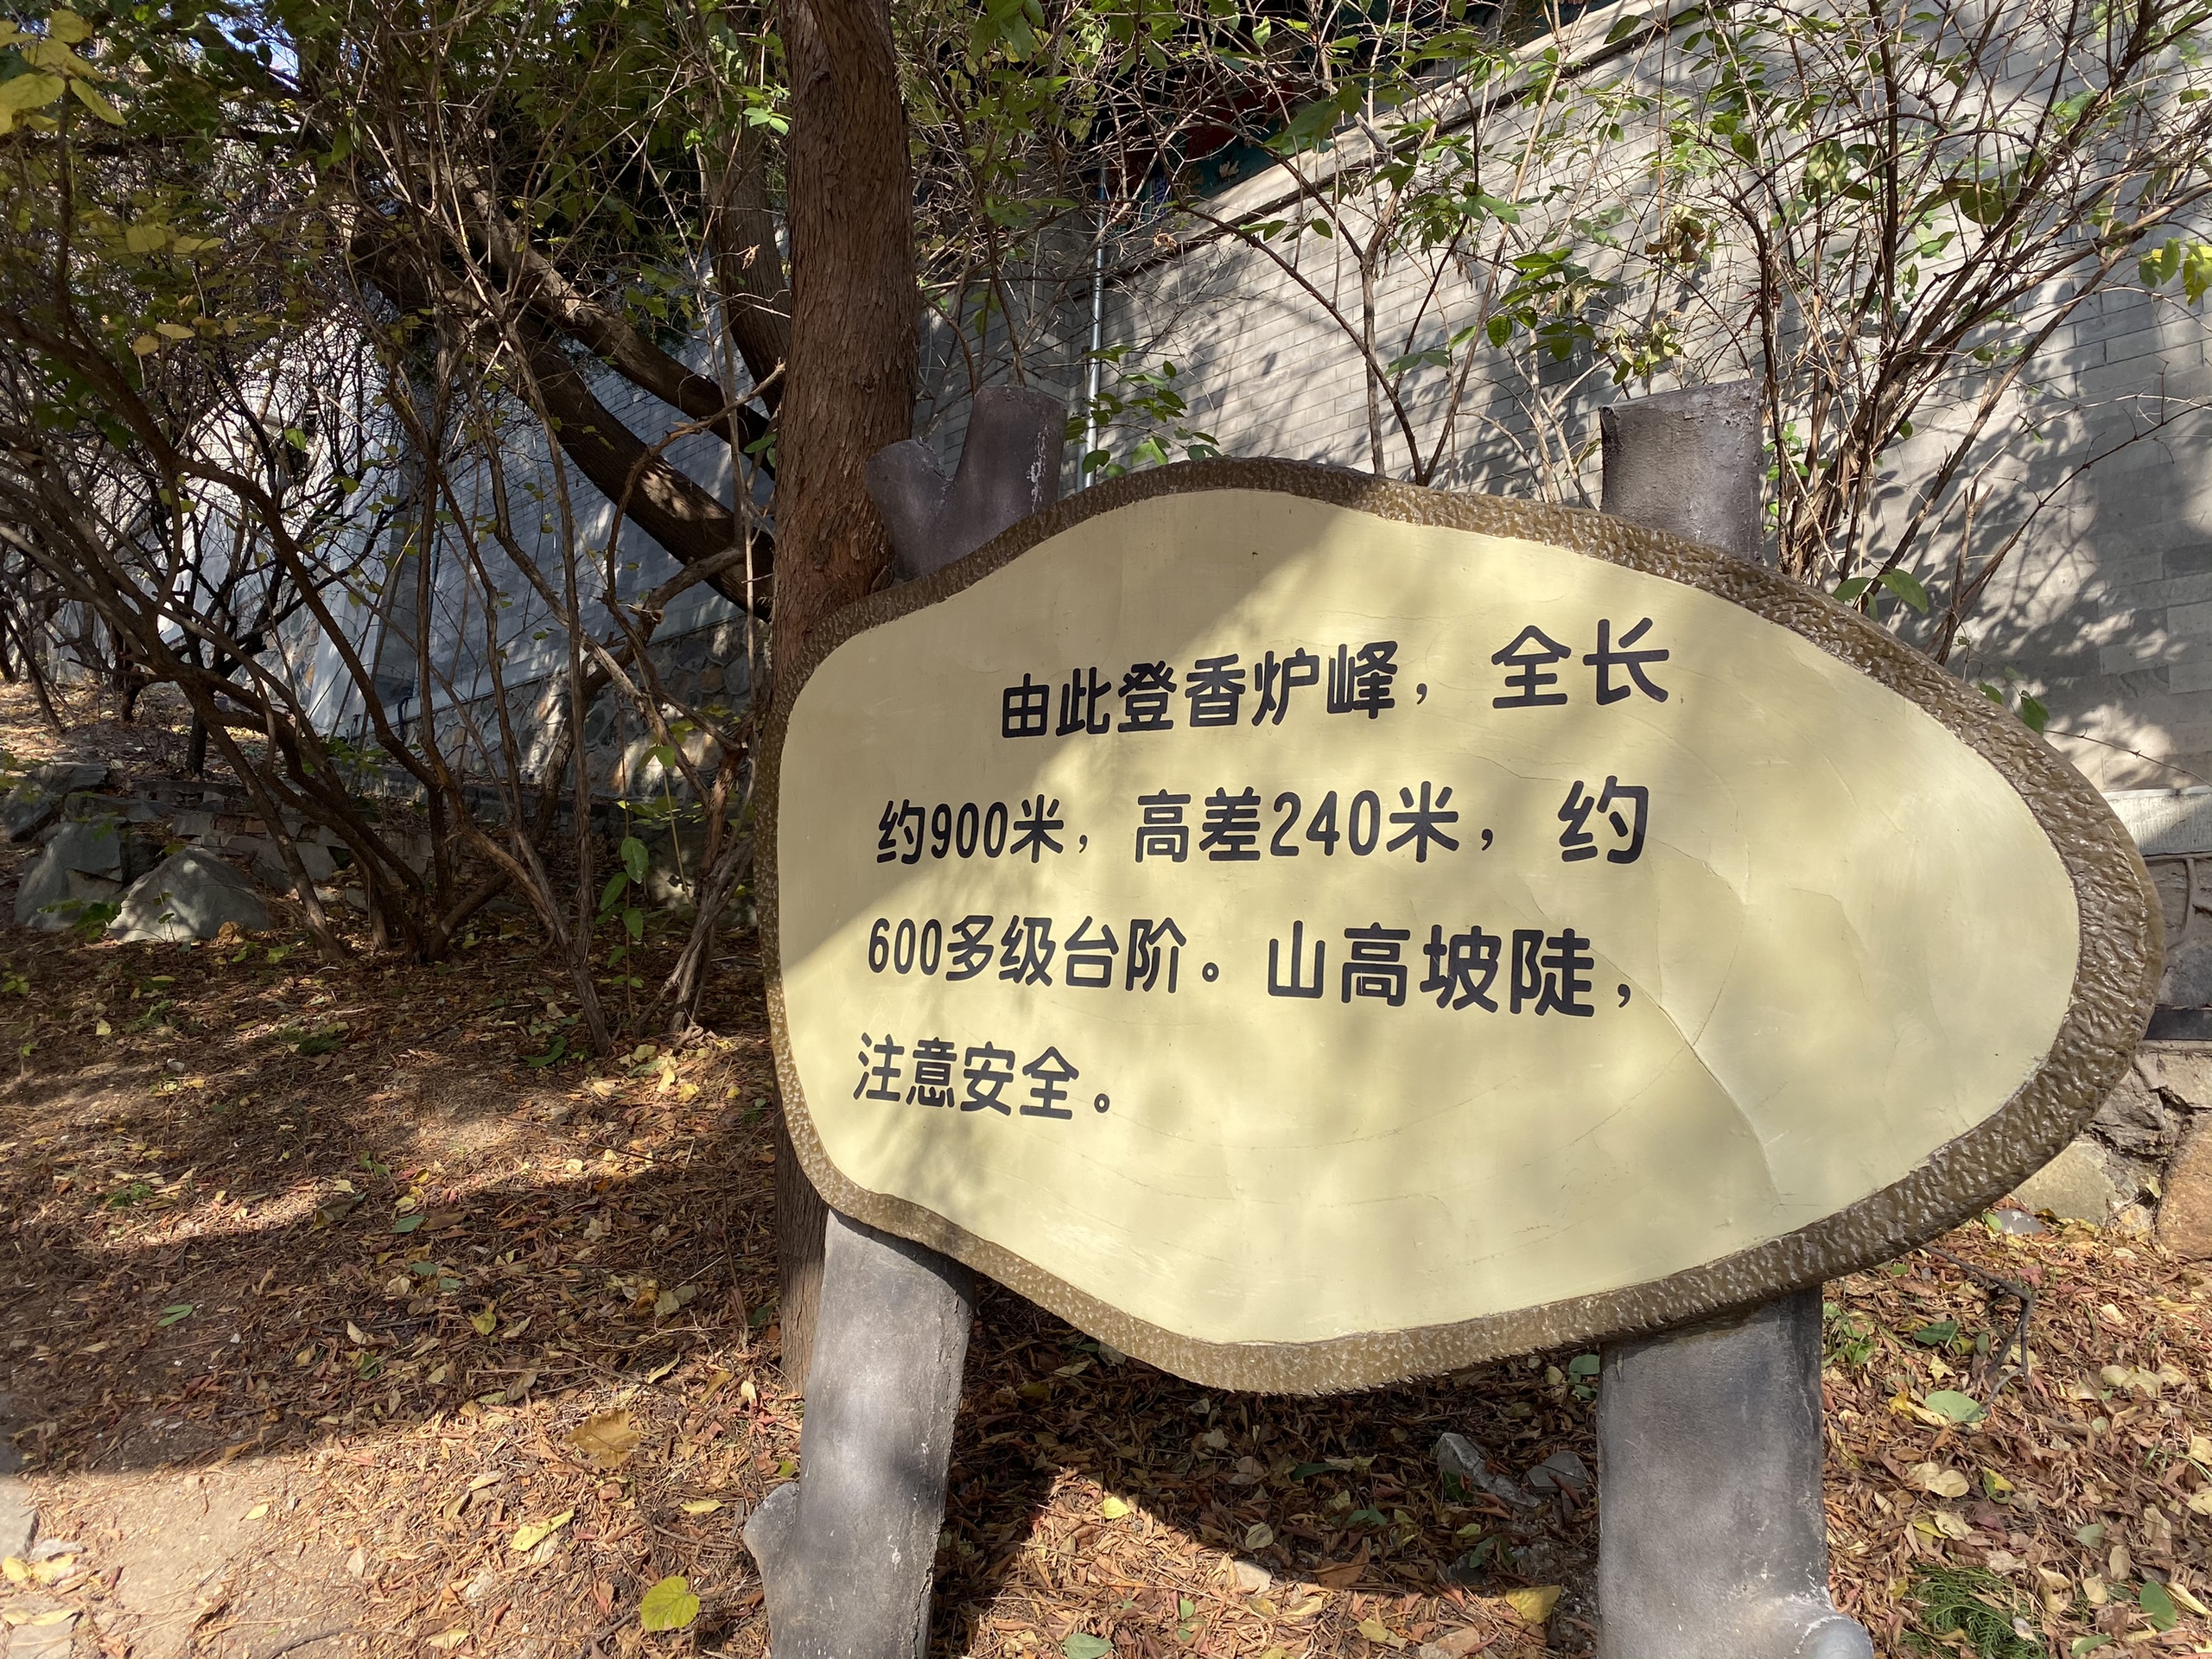 香山公园爱国主义教育示范基地—双清别墅